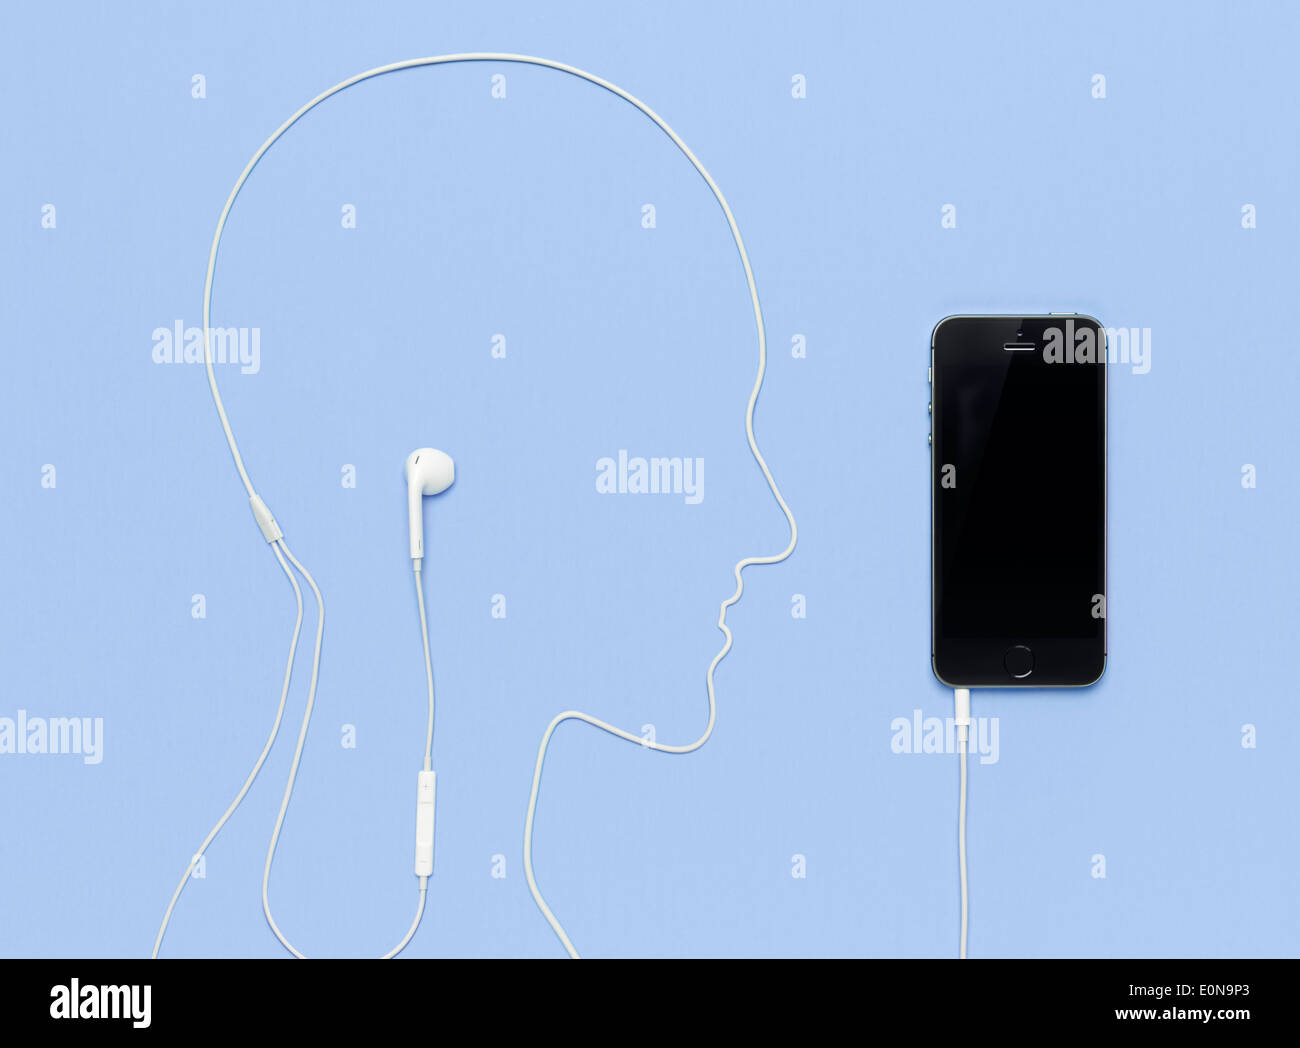 Tête d'homme contours pris par un cordon des écouteurs branchés sur l'iPhone 5s smartphone. Musique créative concept sur fond bleu. Banque D'Images